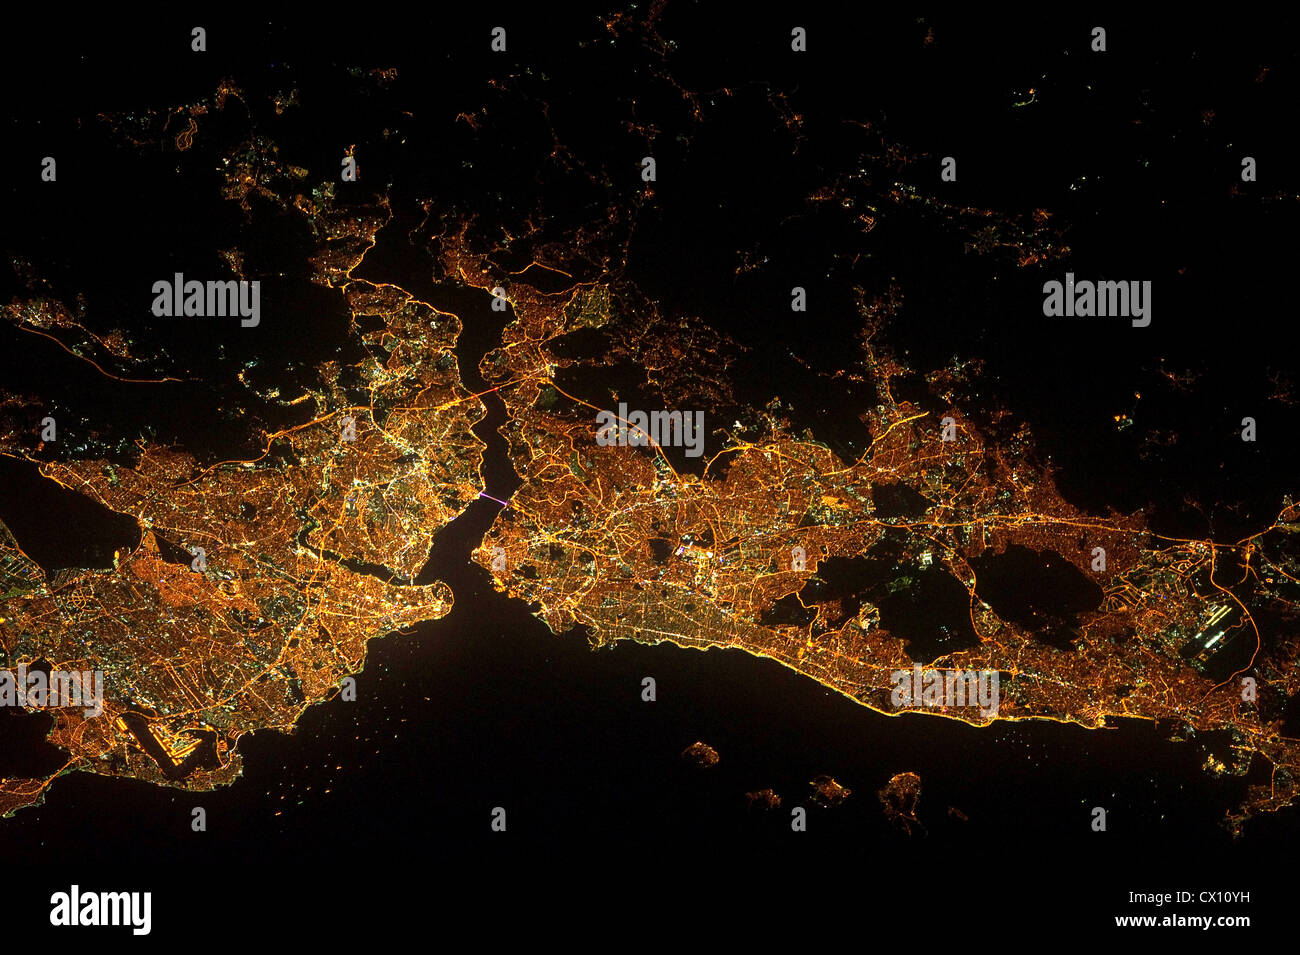 Istanbul und die Bosporus-Meerenge erscheinen in dieser Nacht Blick aus dem Weltall Stockfoto